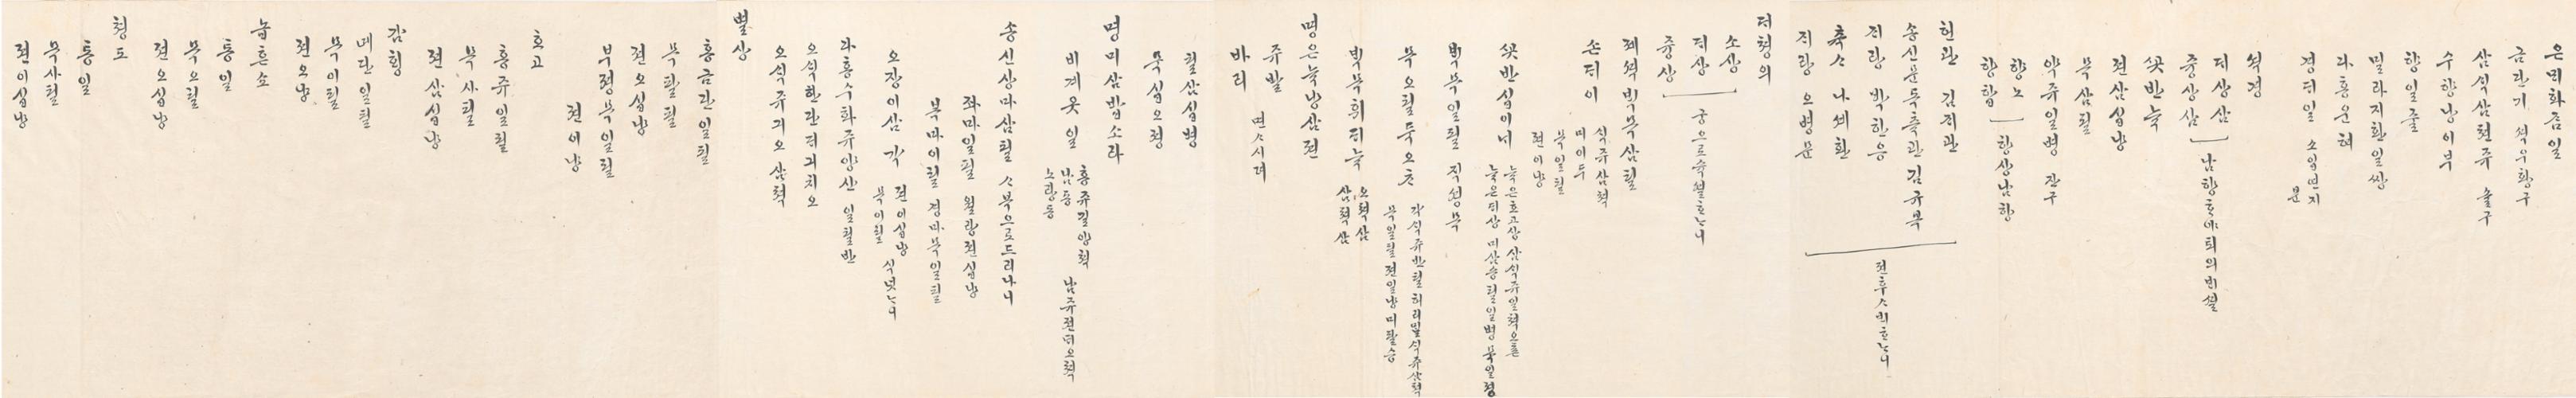 2_1879년 12월 왕세자 천연두 시 점심 차배 발기 2.jpg